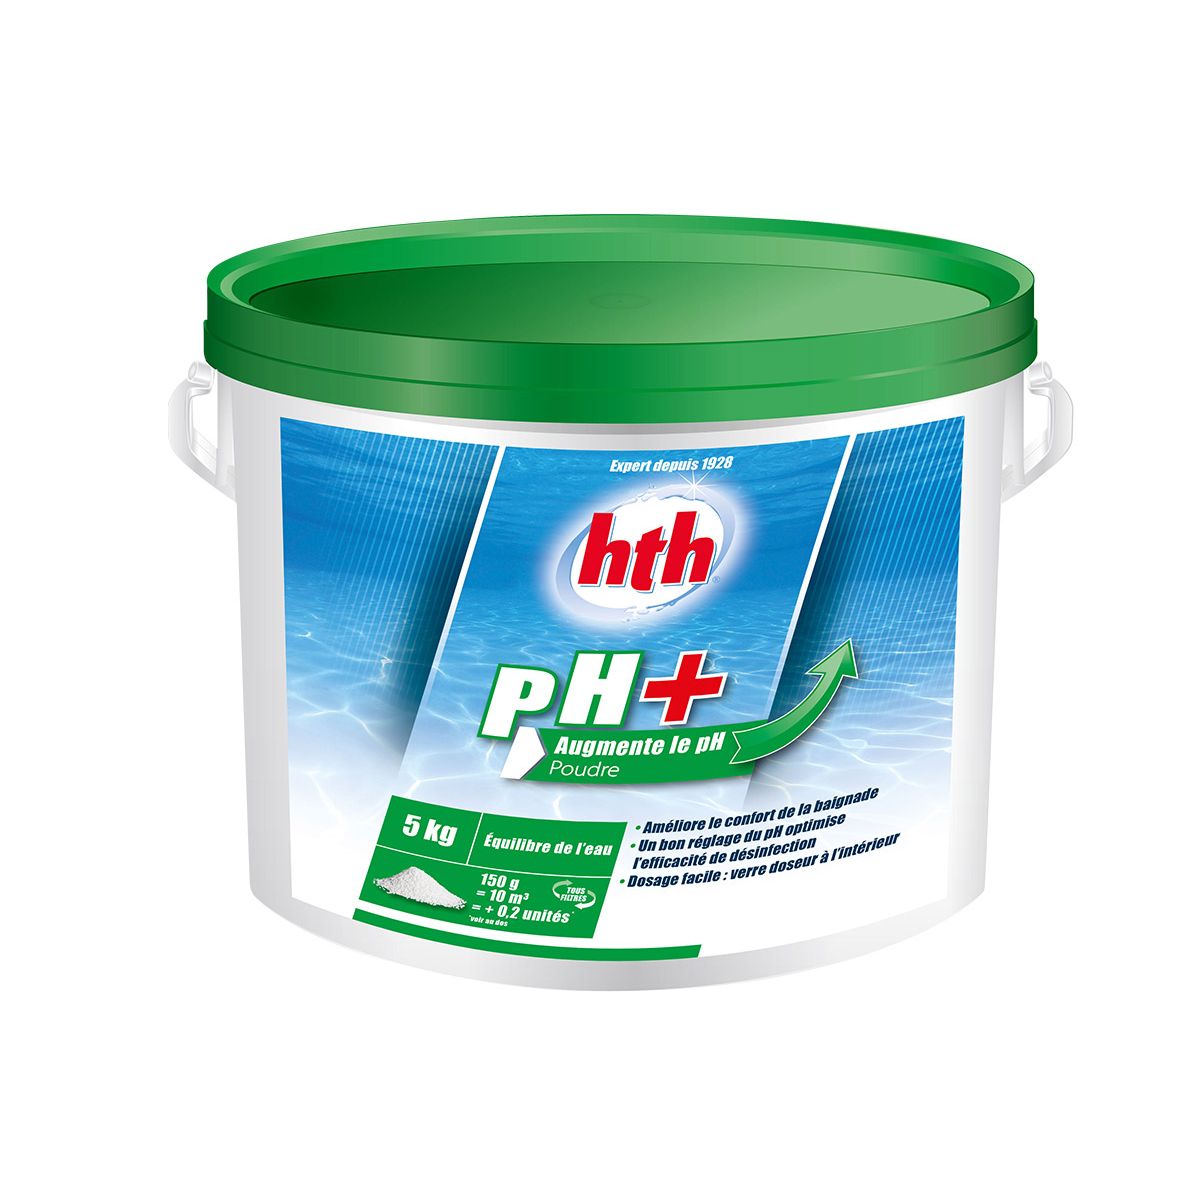 HTH pH plus poudre 5 kg - HTH